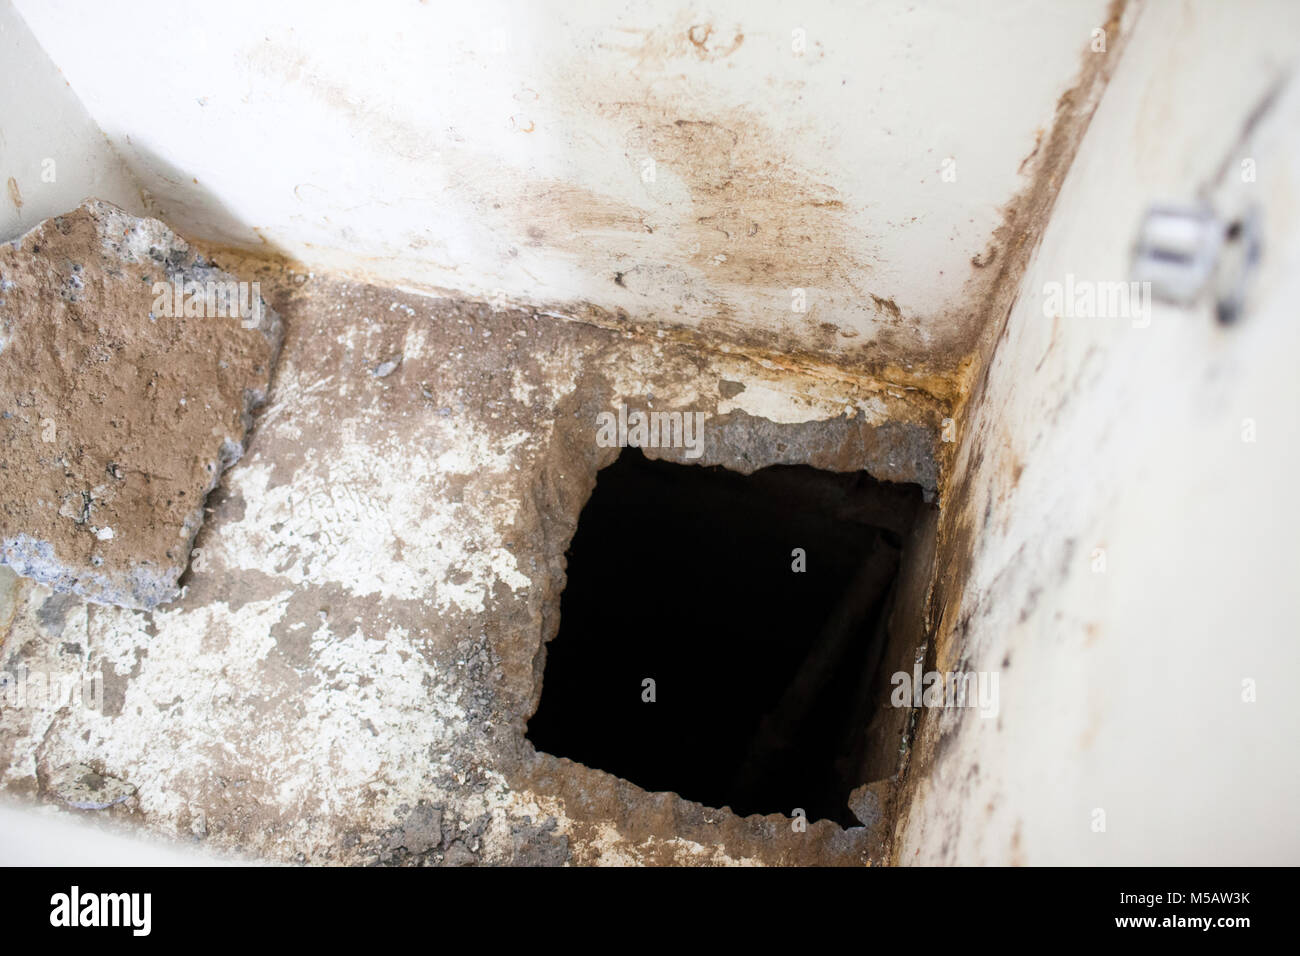 Le trou de Joaquin "El Chapo" Guzman's cell, qu'il a utilisées pour échapper à la prison de l'Altiplano, près de Toluca, Mexique le mercredi, Juillet 15, 2015. Le célèbre chef du cartel Joaquin "El Chapo" Guzman s'est échappé de la prison à sécurité maximum il y a quatre jours, à travers un tunnel. C'est la deuxième fois qu'il a échappé à une prison mexicaine. Banque D'Images